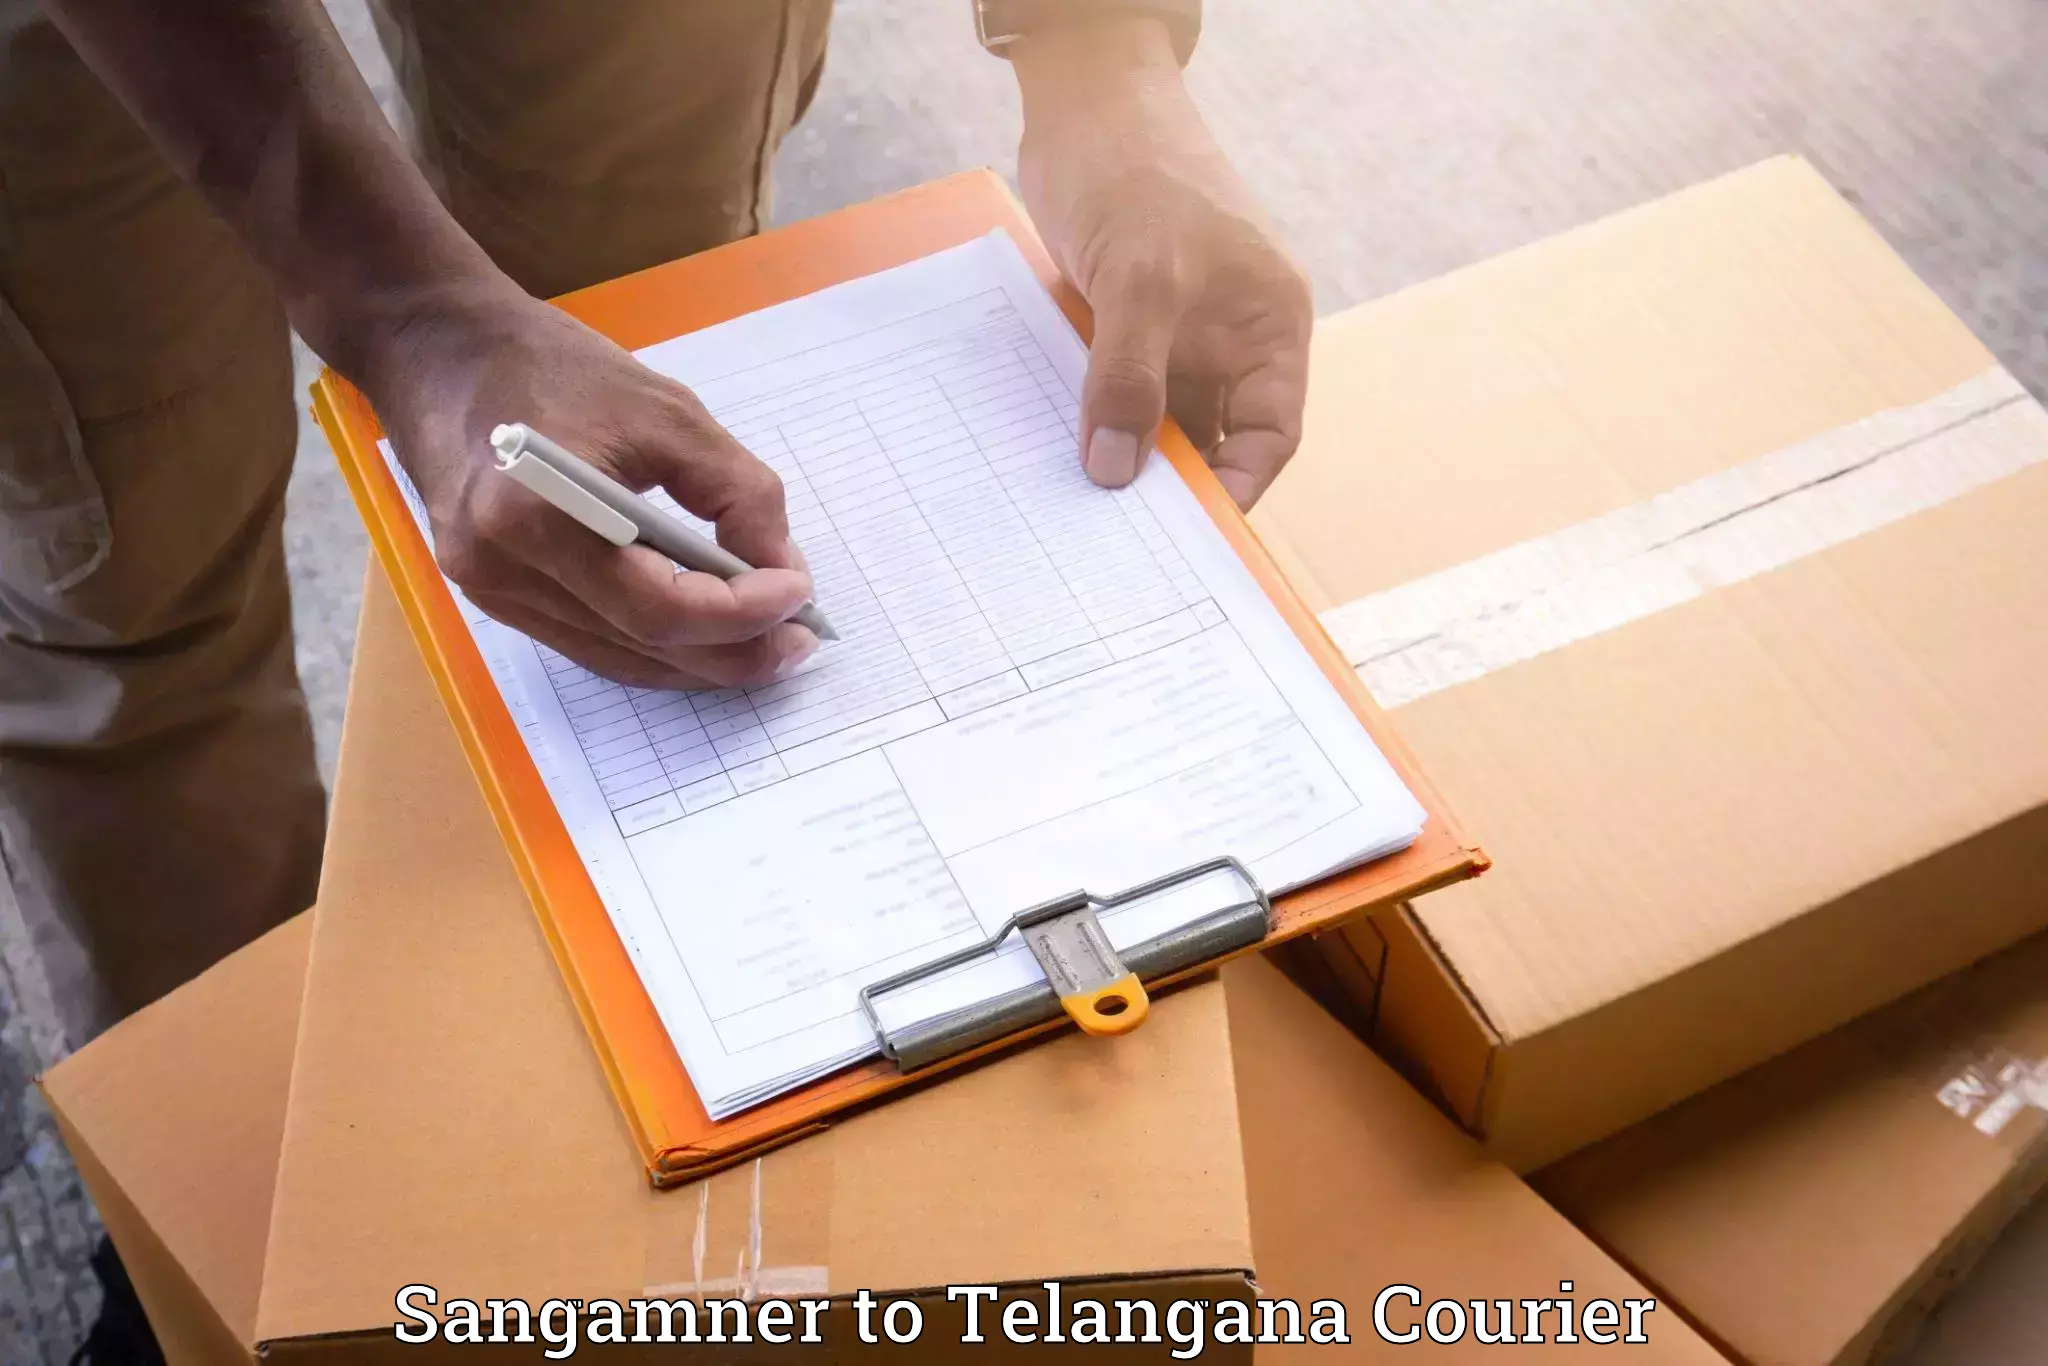 Furniture transport company Sangamner to Thungathurthi